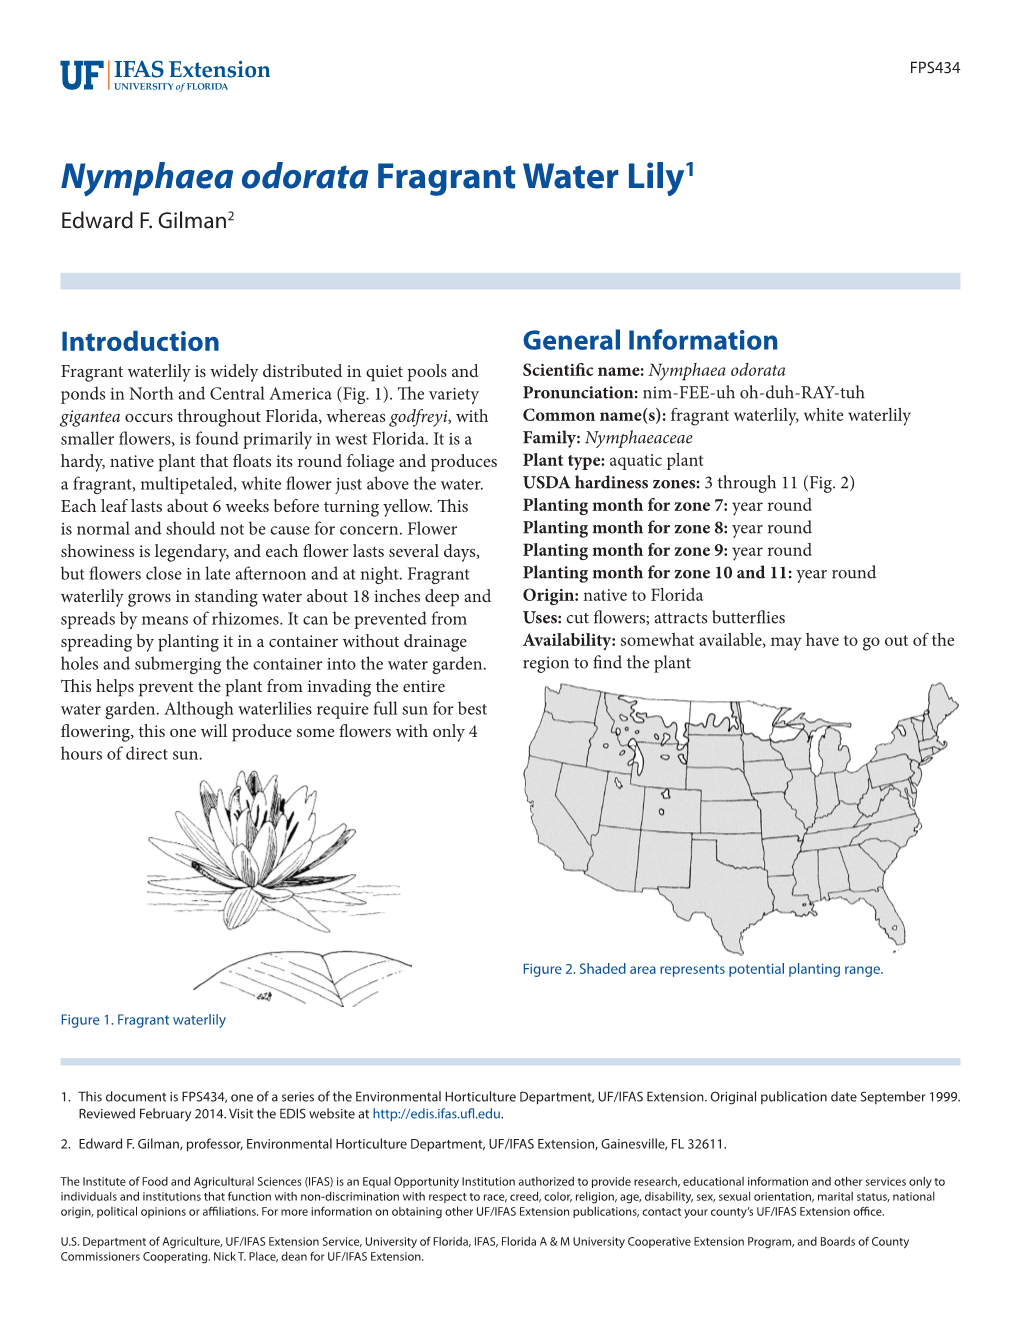 Nymphaea Odorata Fragrant Water Lily1 Edward F